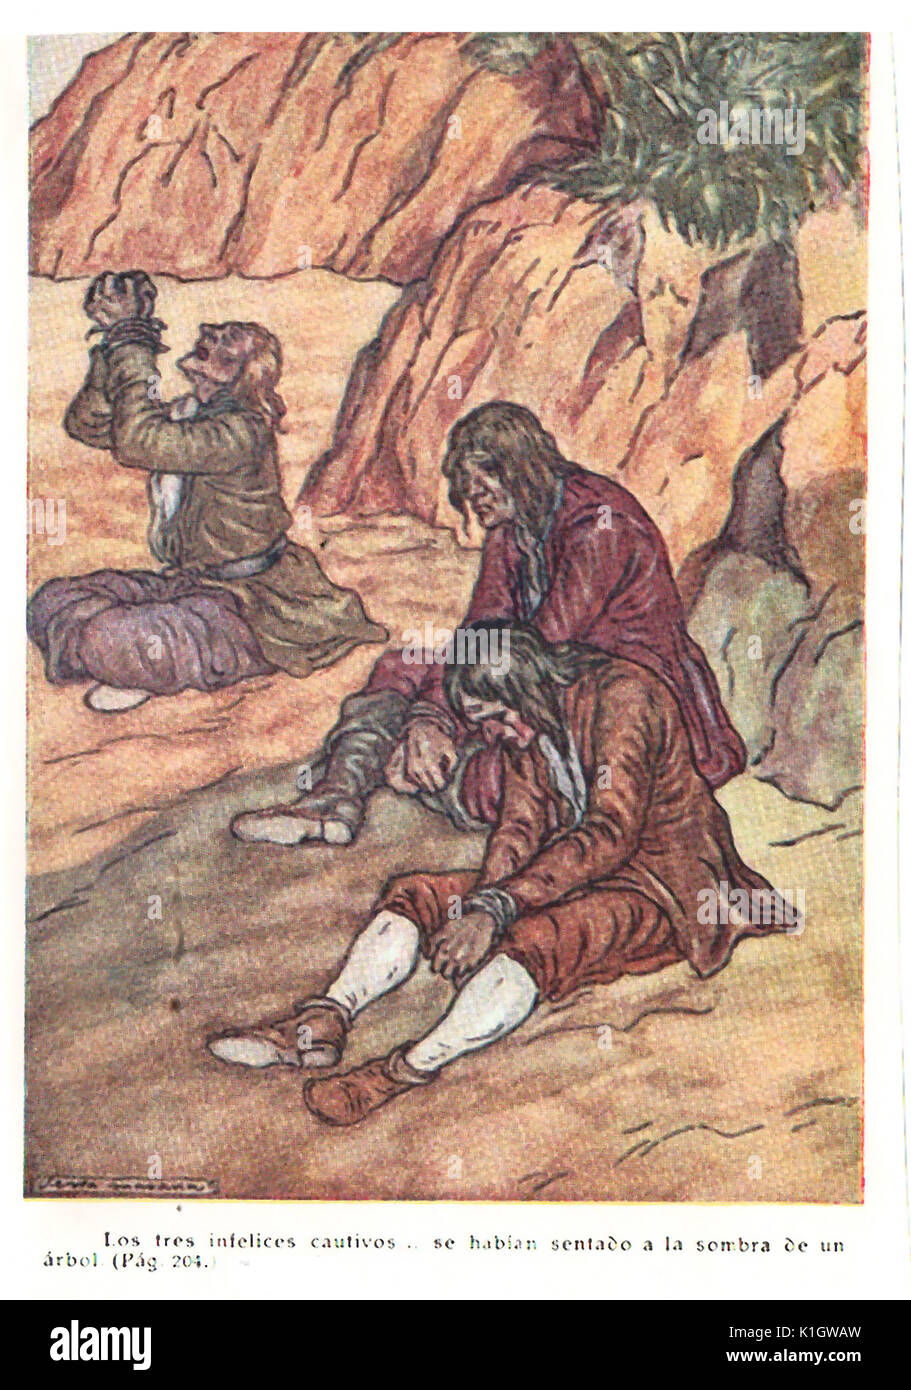 Eine Seite von der Spanischen Version von Robinson Crusoe (1925) "aventuras de Robinson' (Daniel Defoe) angepasst durch Gaziel. (Augusti Calvet Pascual)-la (Abbildungen in Farbe von Serra Masana. Stockfoto